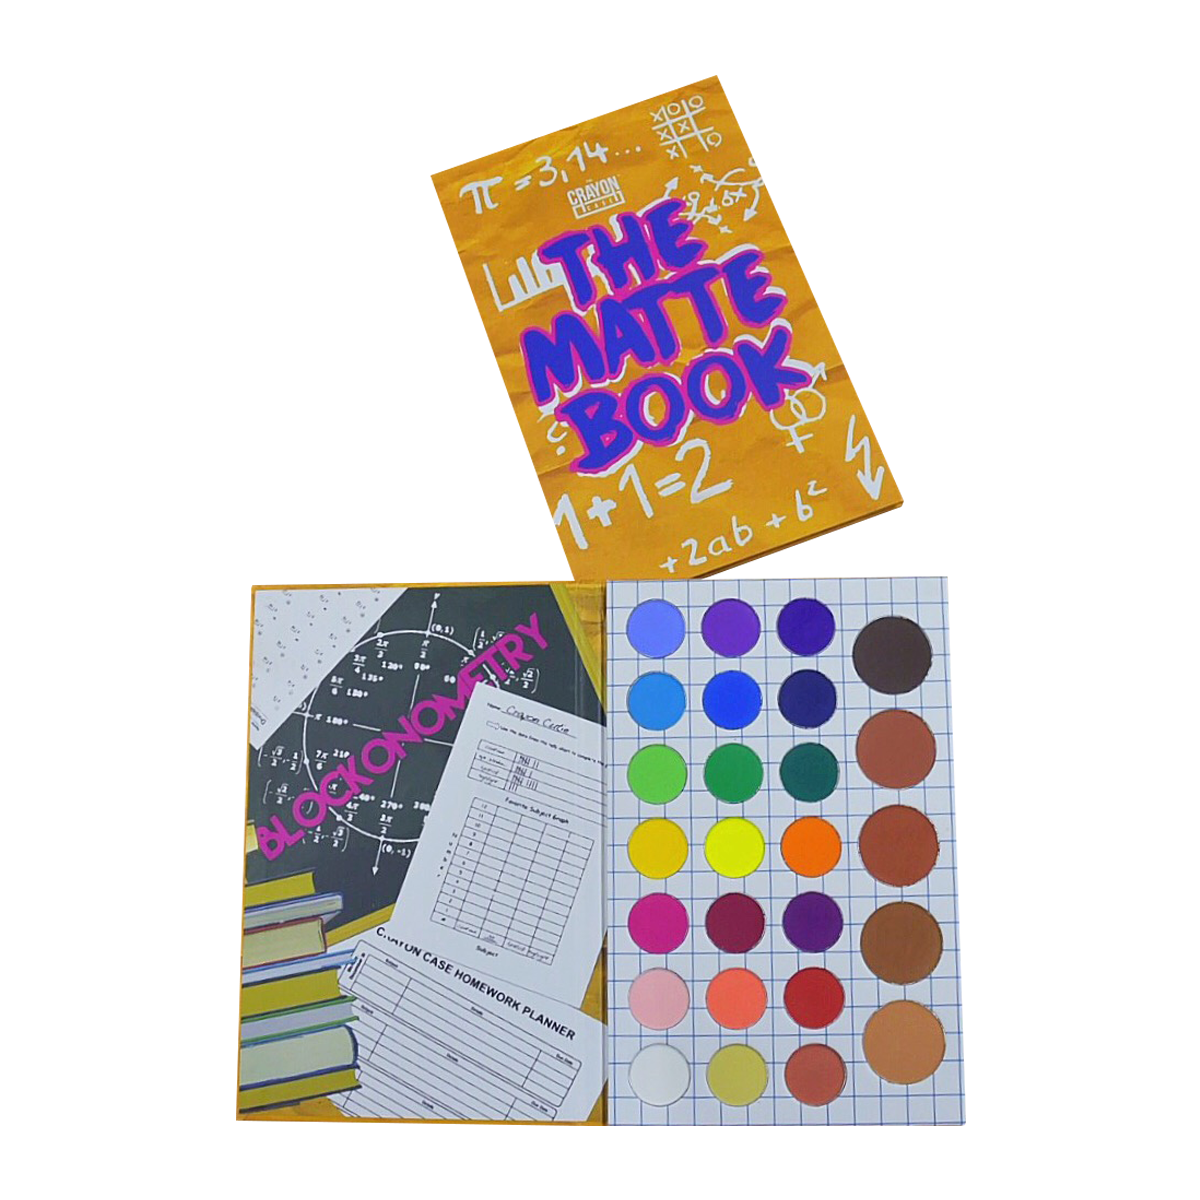 The Matte Book Palette